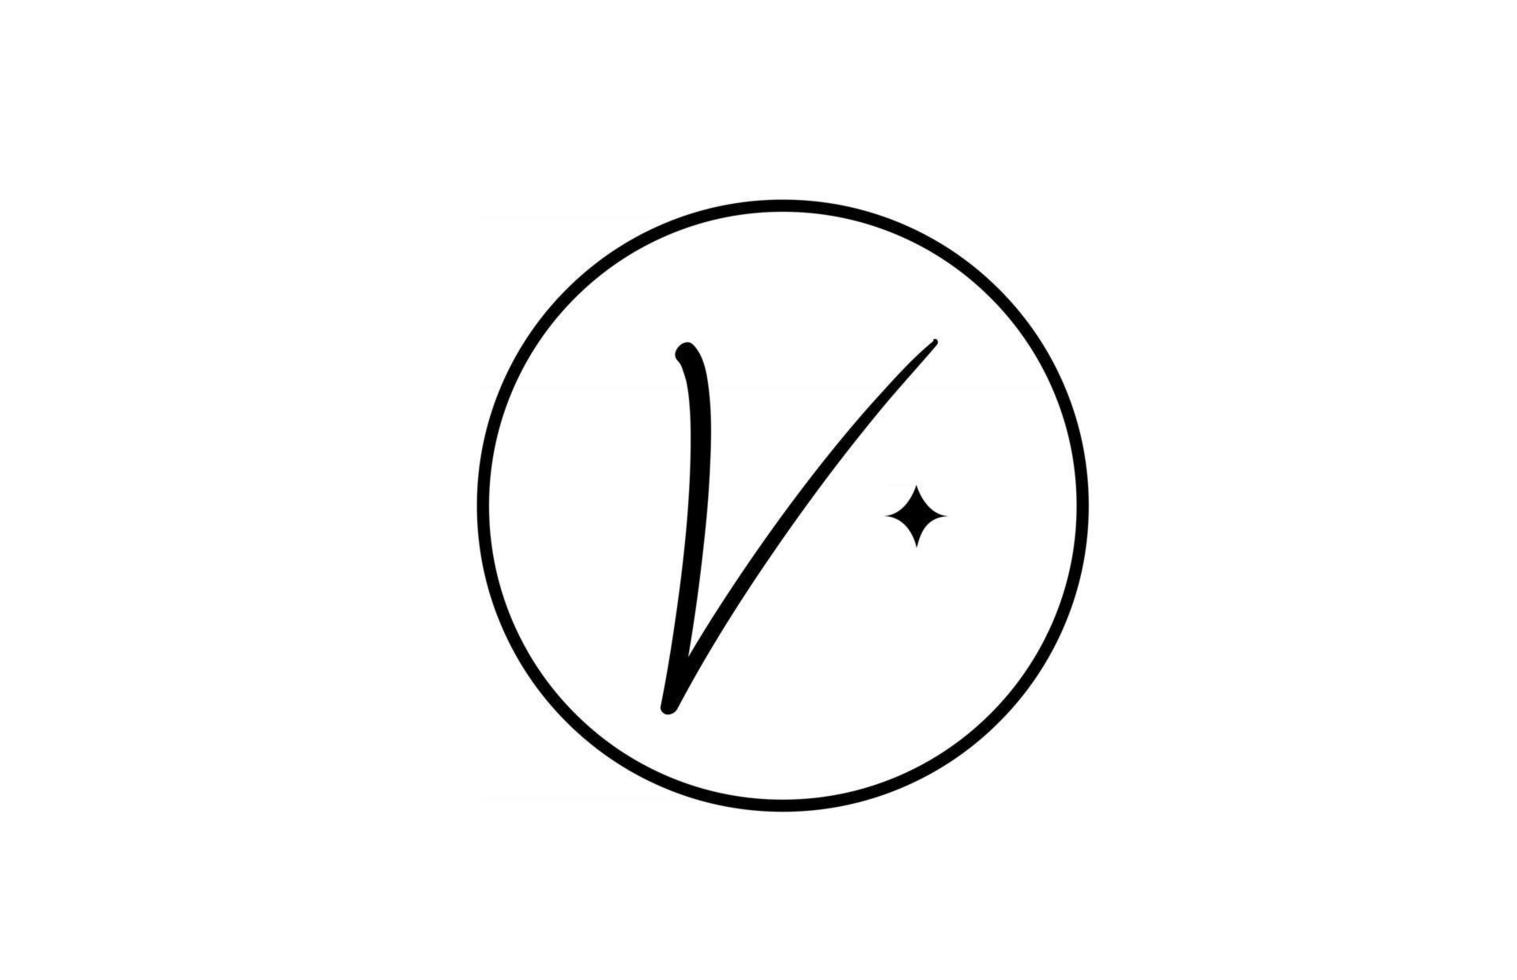 V logo de letra del alfabeto para empresas con estrella y círculo. letras simples y elegantes para la empresa. Diseño de icono de marca de identidad corporativa en blanco y negro. vector